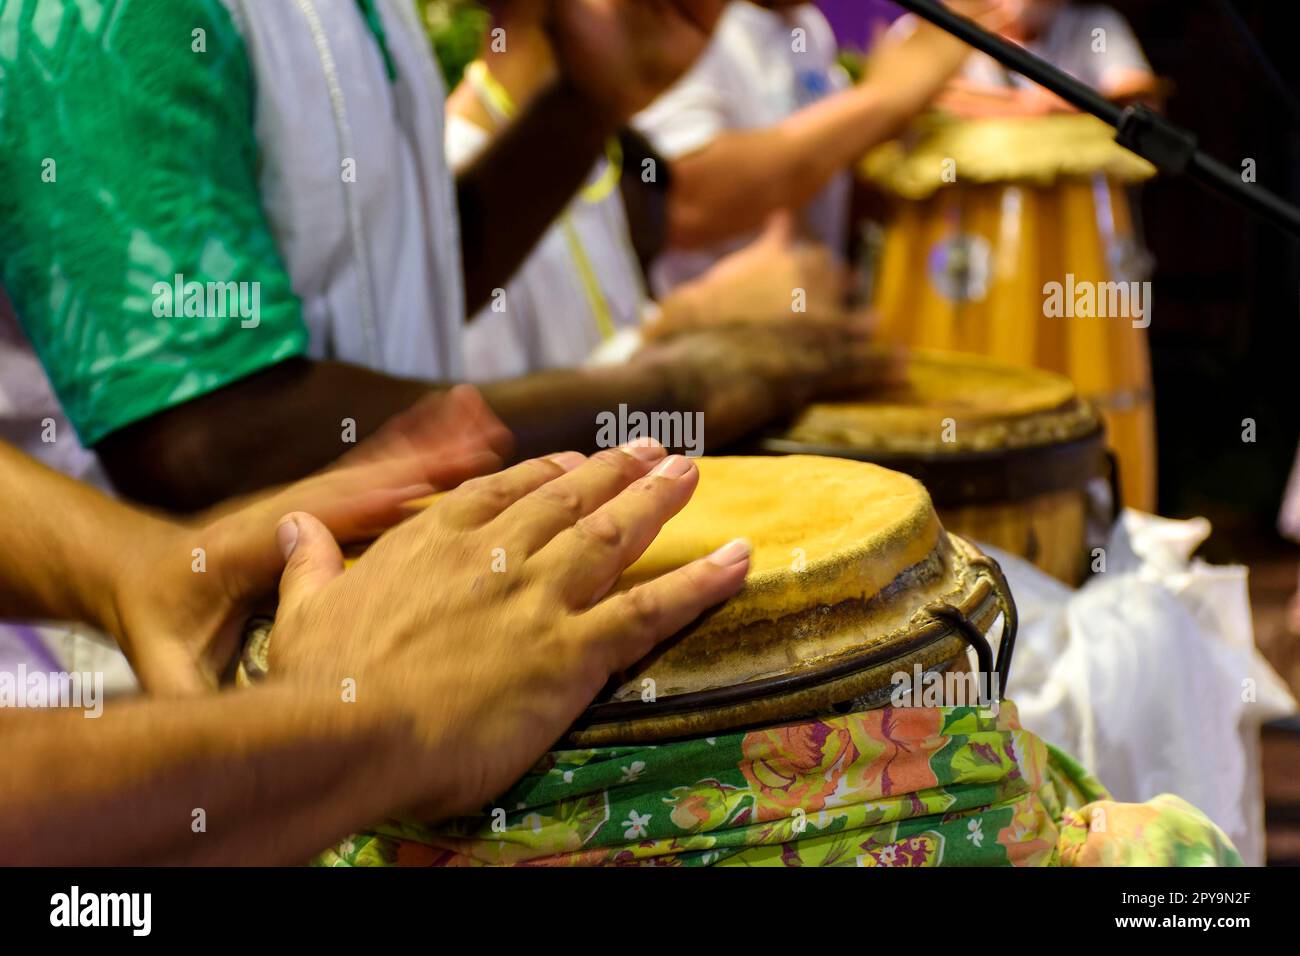 Trommeln, die in Brasilien als atabaque bezeichnet werden, werden während einer Zeremonie gespielt, die typisch für Umbanda ist, eine afro-brasilianische Religion, wo sie die Hauptinstrumente sind Stockfoto